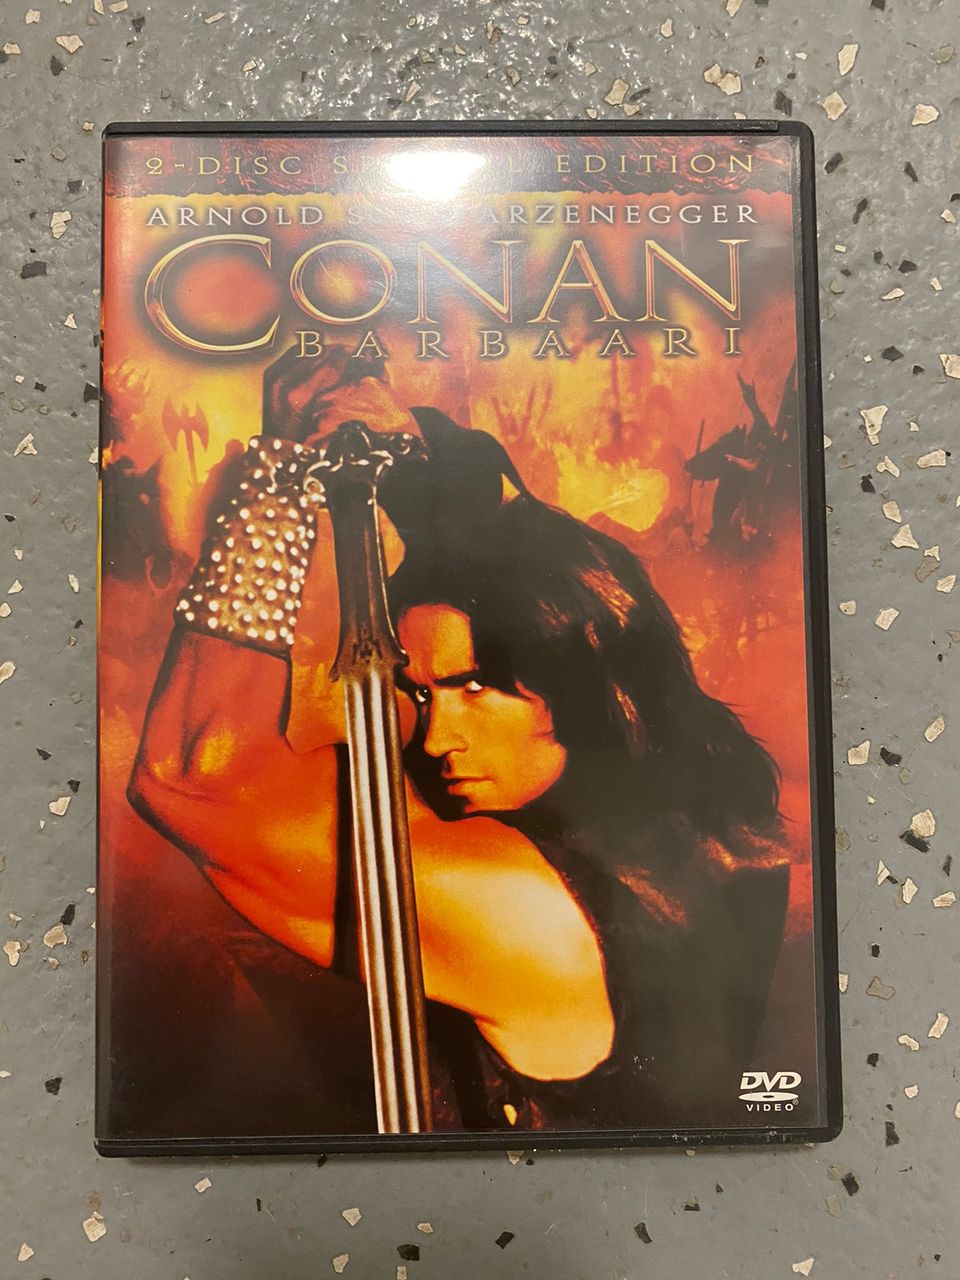 Conan barbaari dvd